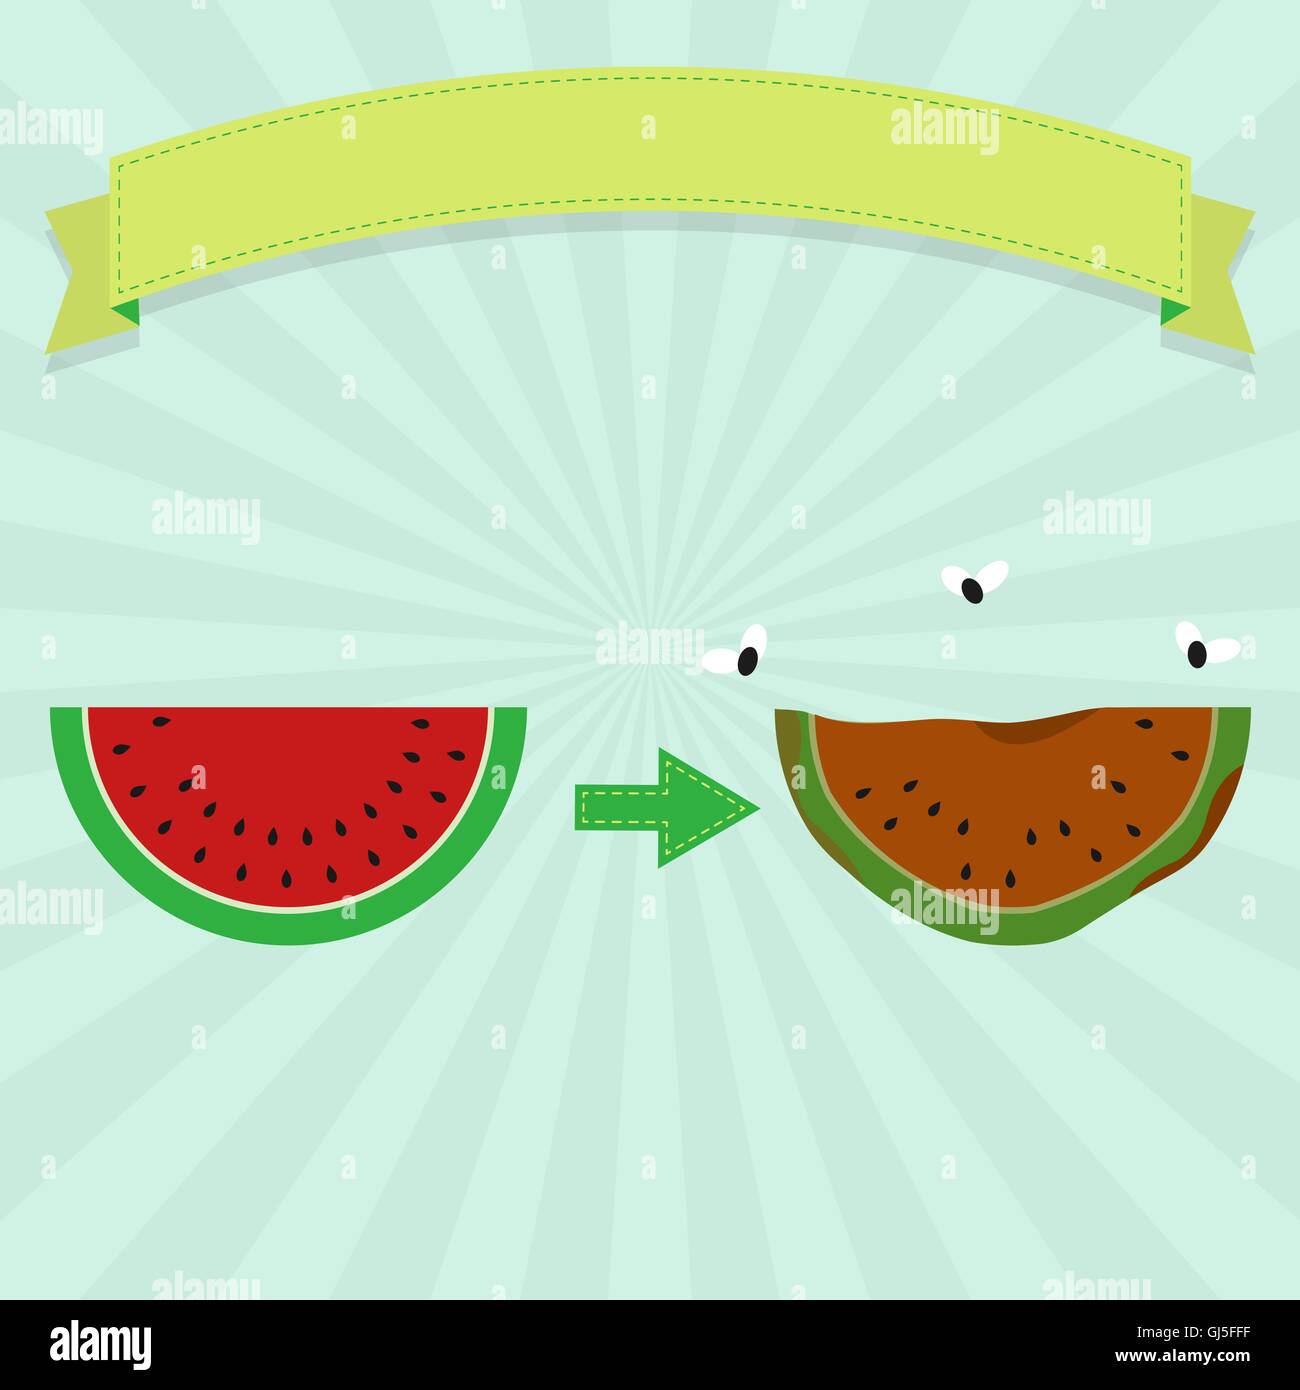 Faule Wassermelone mit fliegen und neue Wassermelone. Leeres Farbband für Text einfügen. Stock Vektor